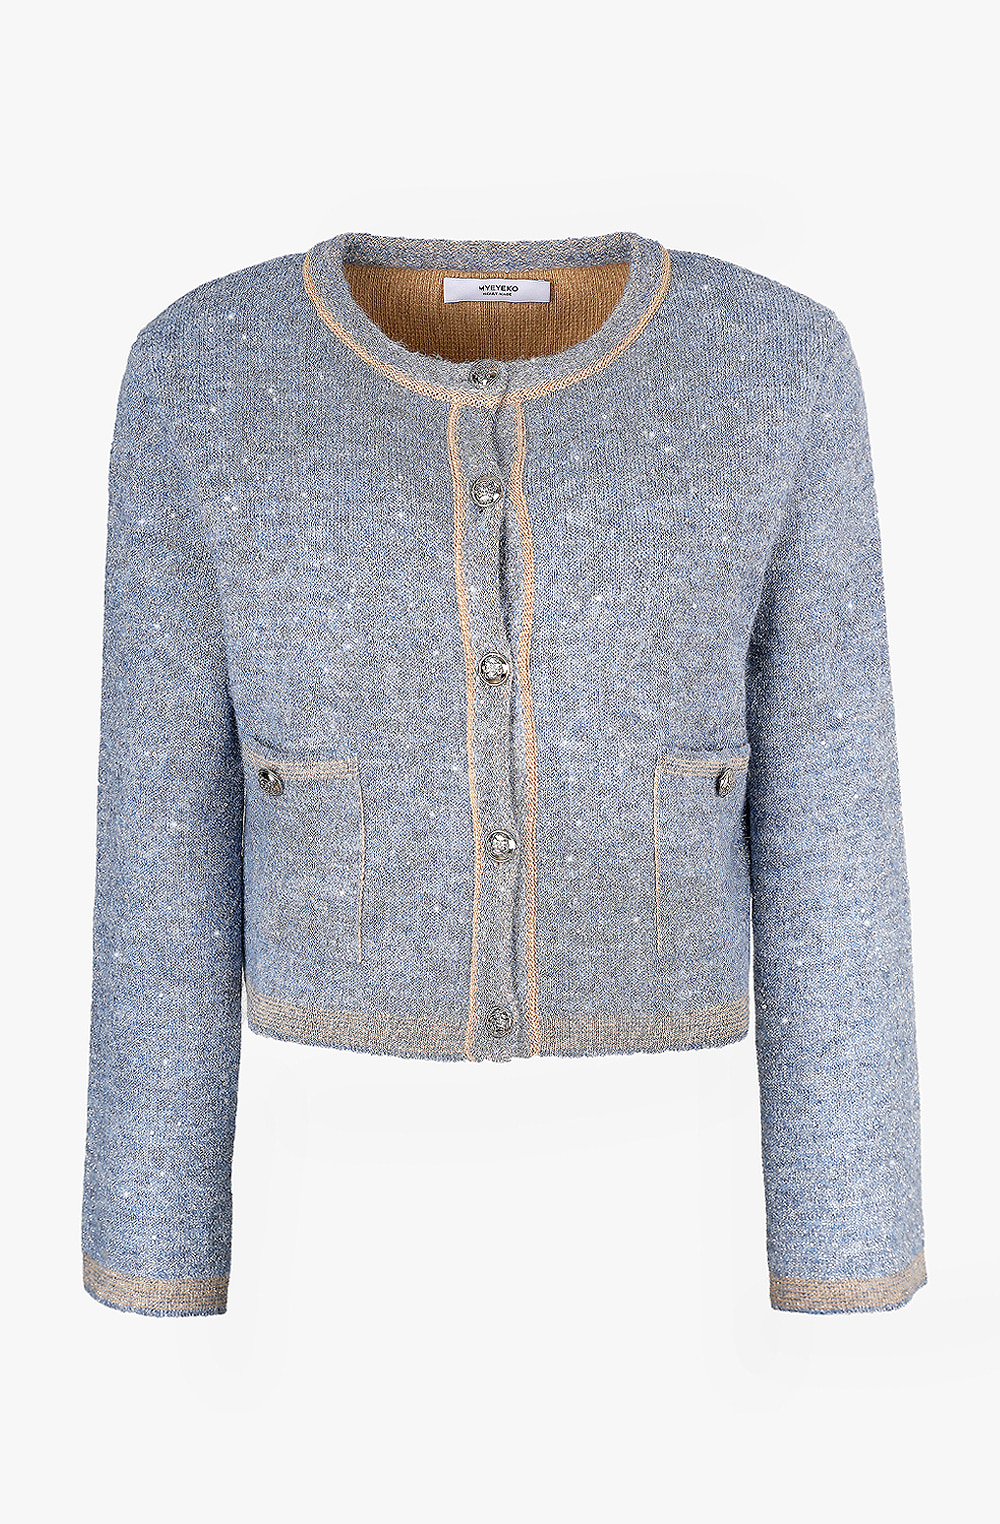 HIGH QUALITY LINE - Sequin Embellished Knit Jacket (POWDER BLUE)